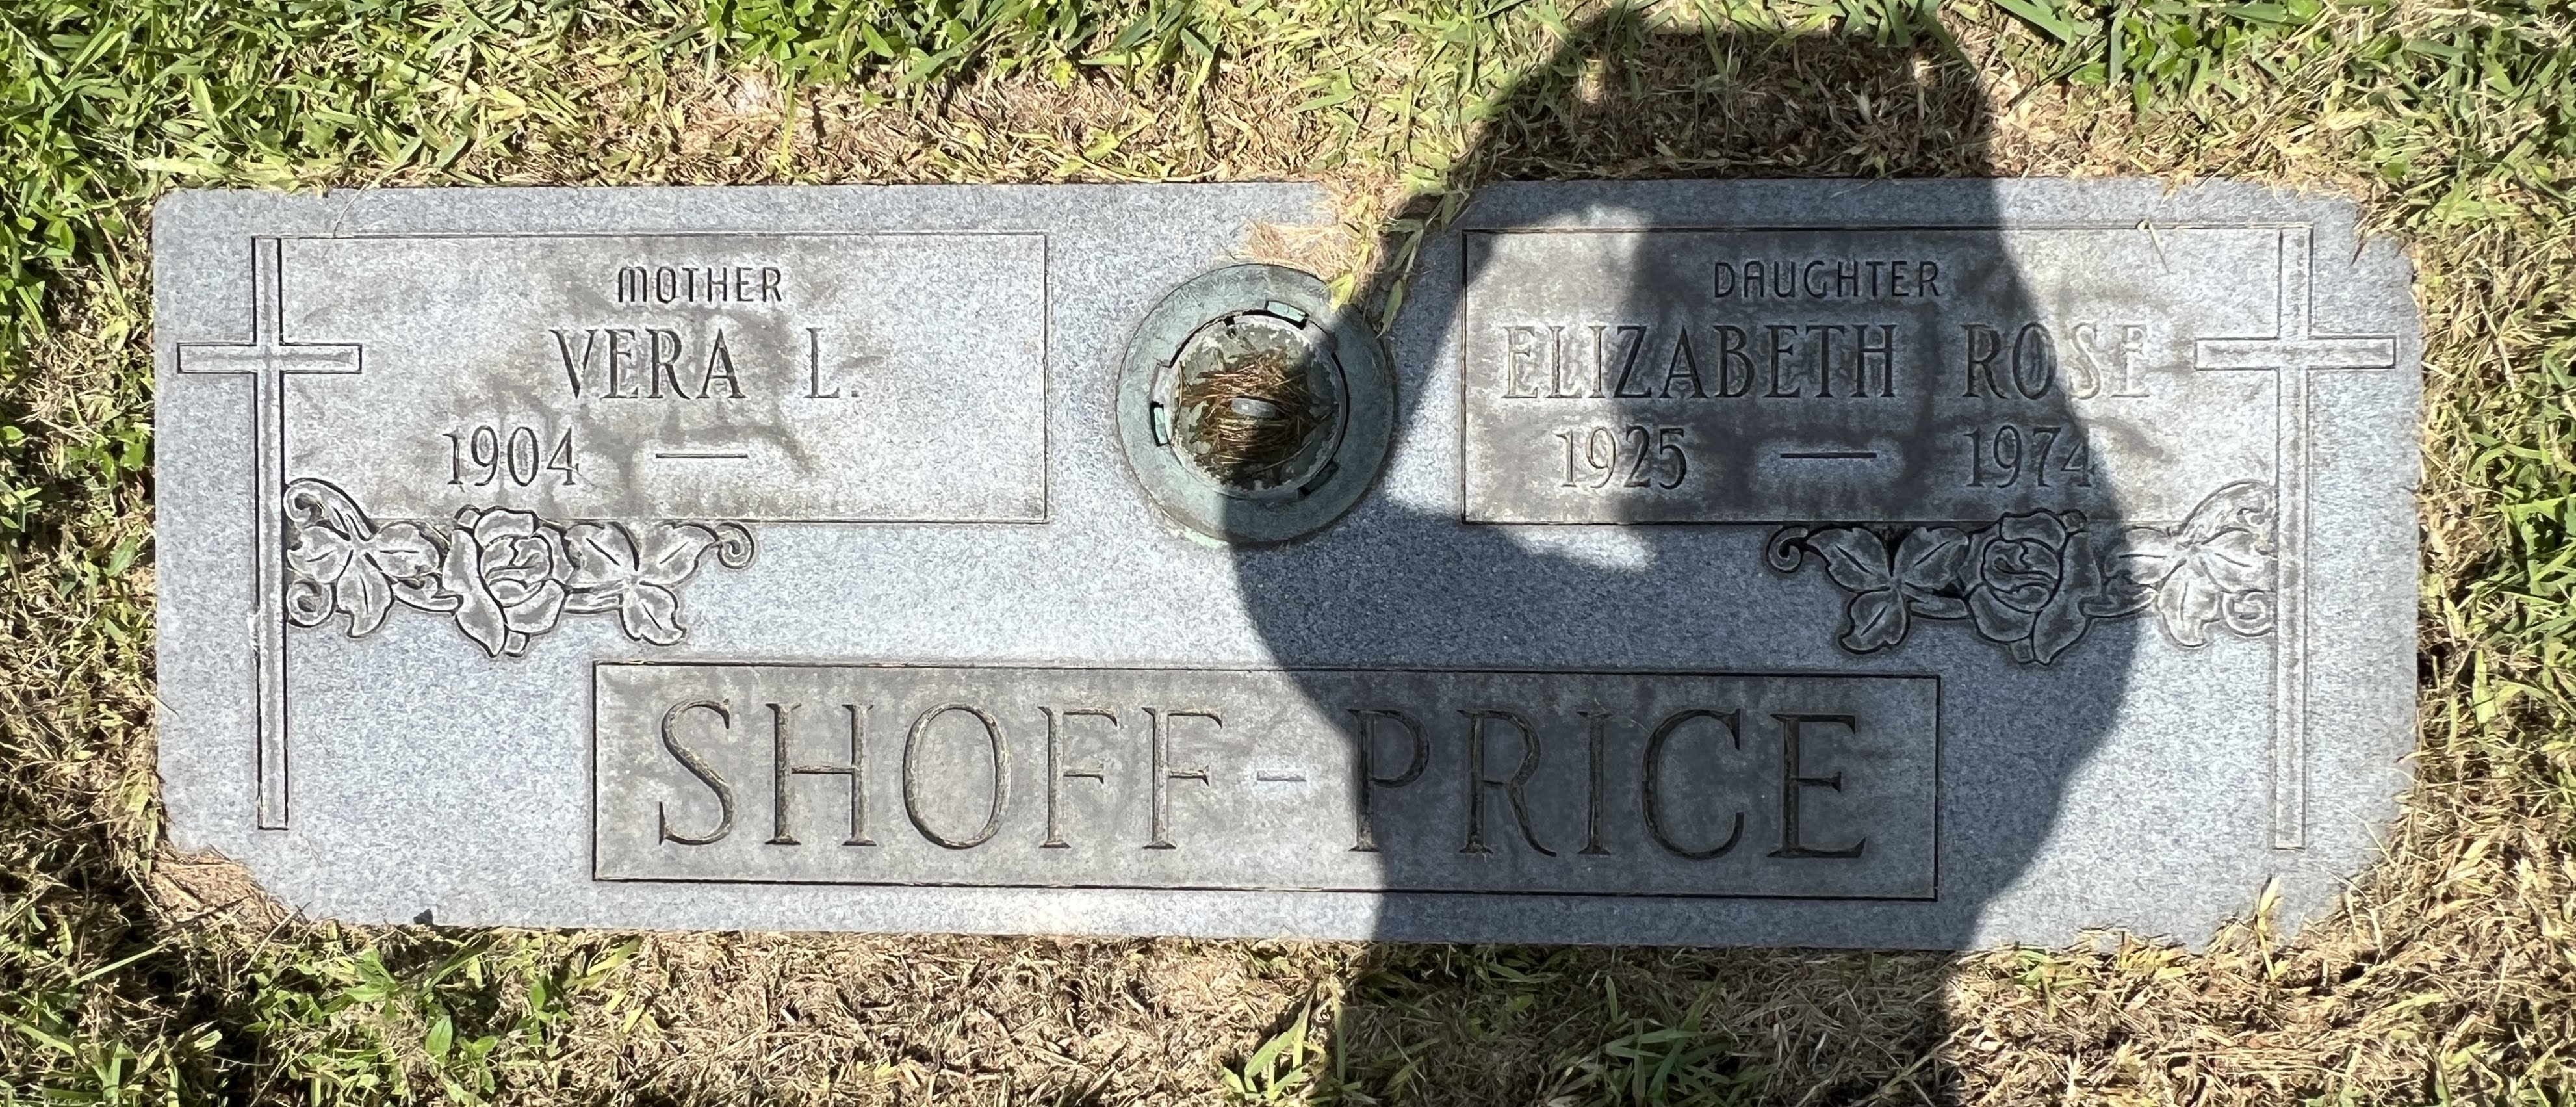 Elizabeth Rose Shoff-Price